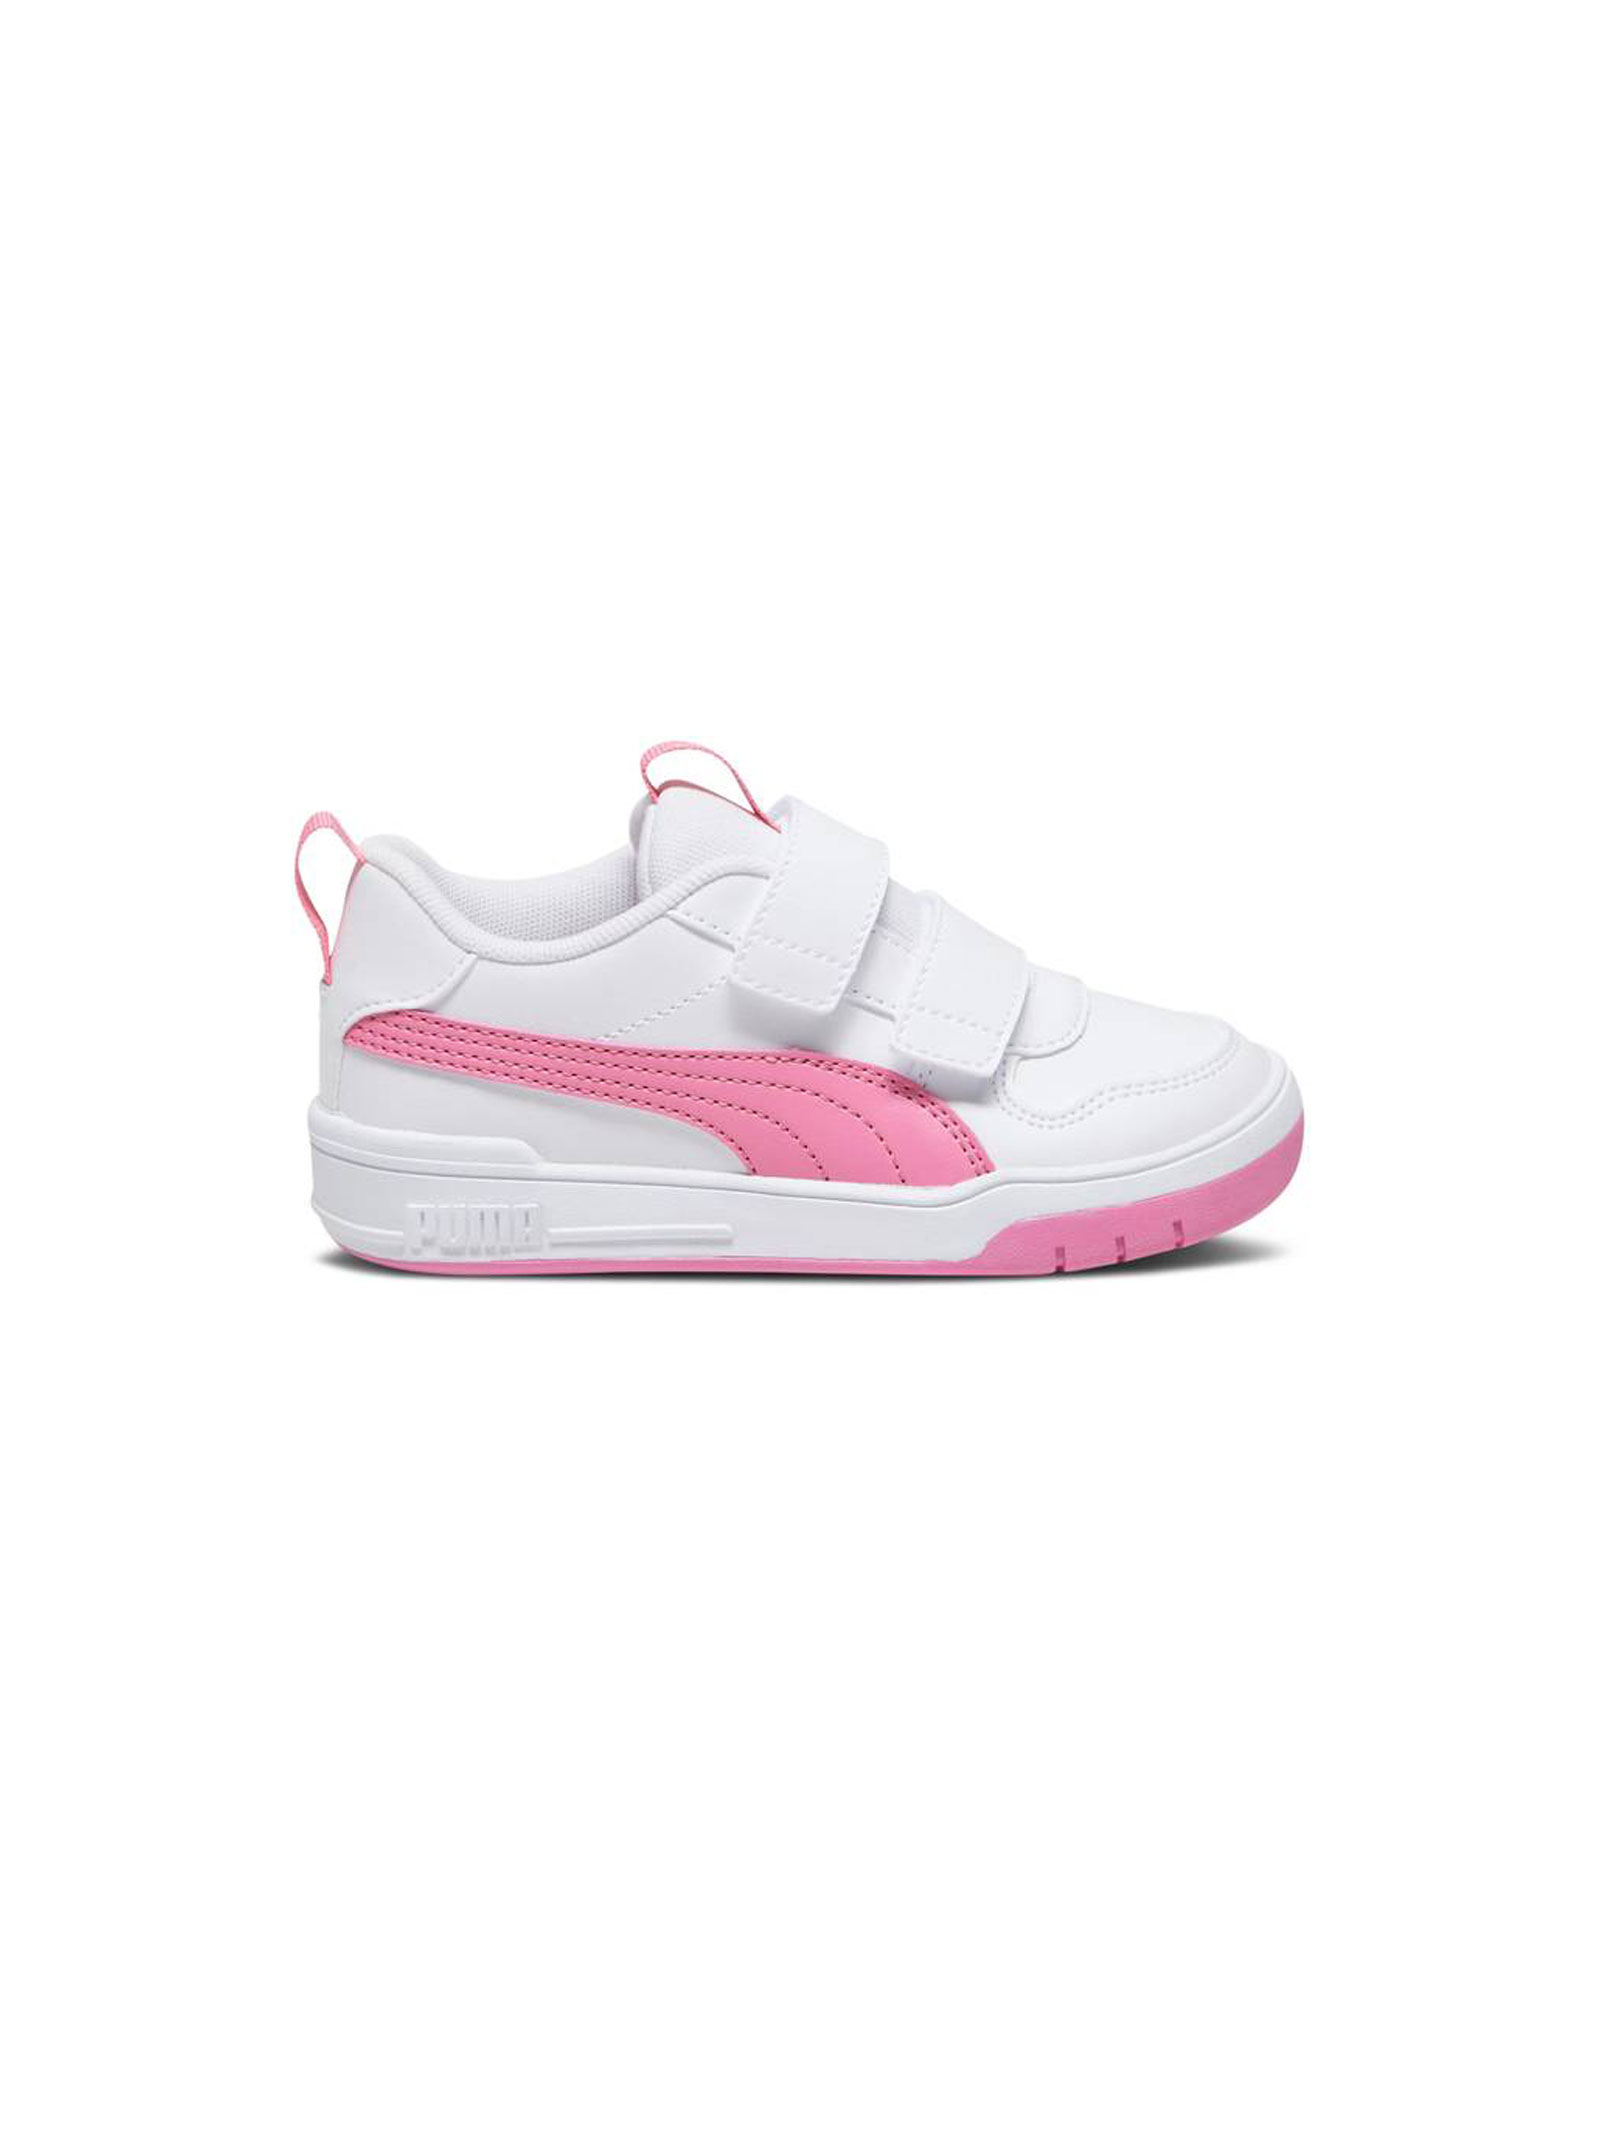 Детские кроссовки Puma Multiflex SL V, белый/розовый